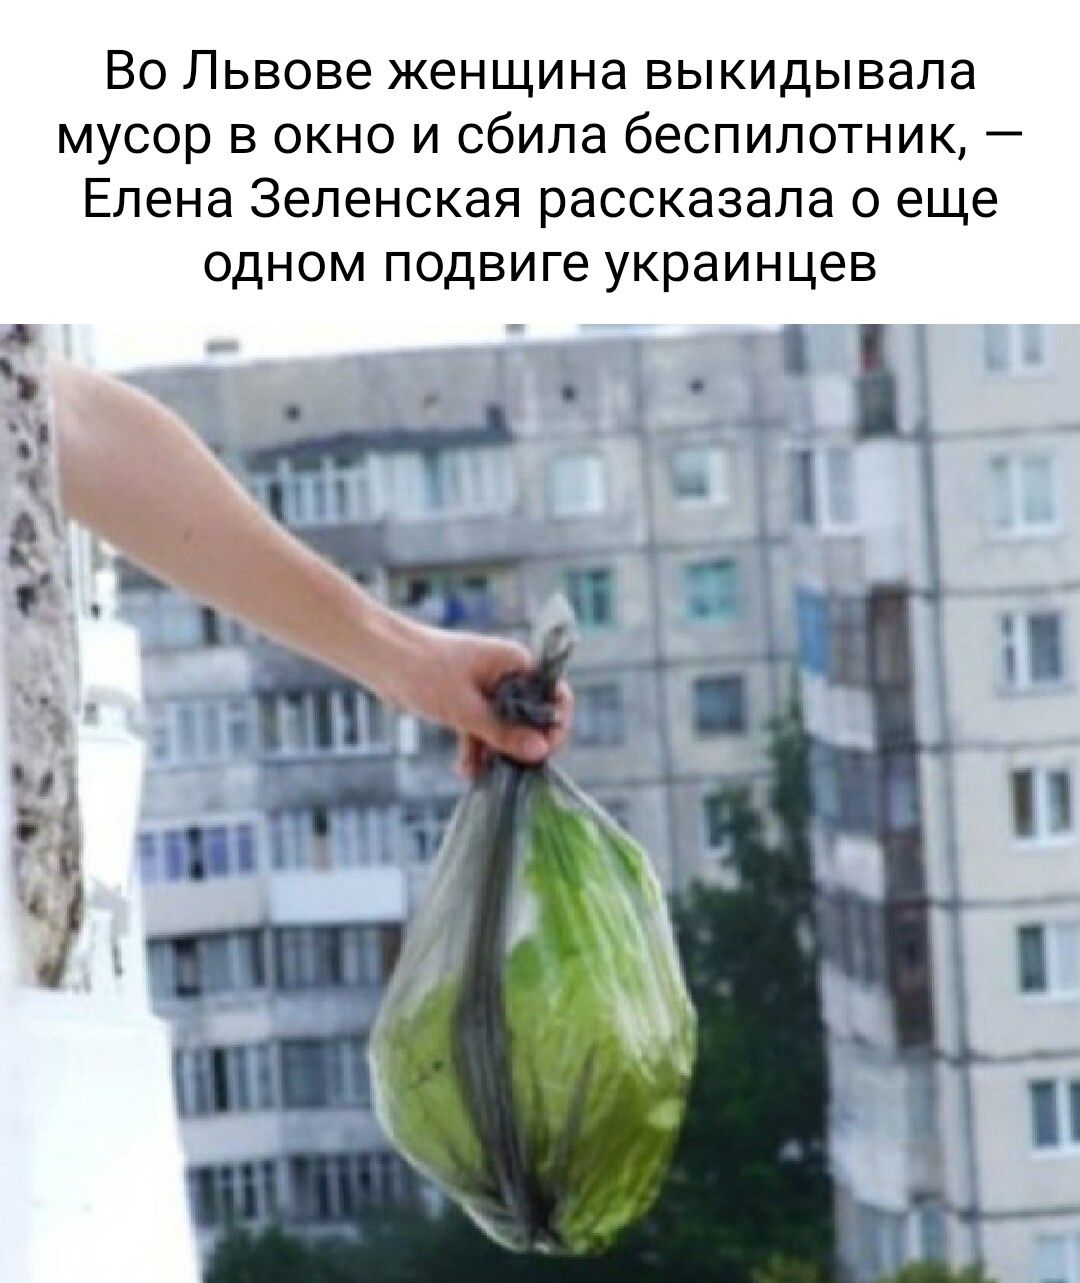 Во Львове женщина выкидывапа мусор окно и сбила беспилотник Елена Зеленская рассказала с еще одном подвиге украинцев 1 к__ 39